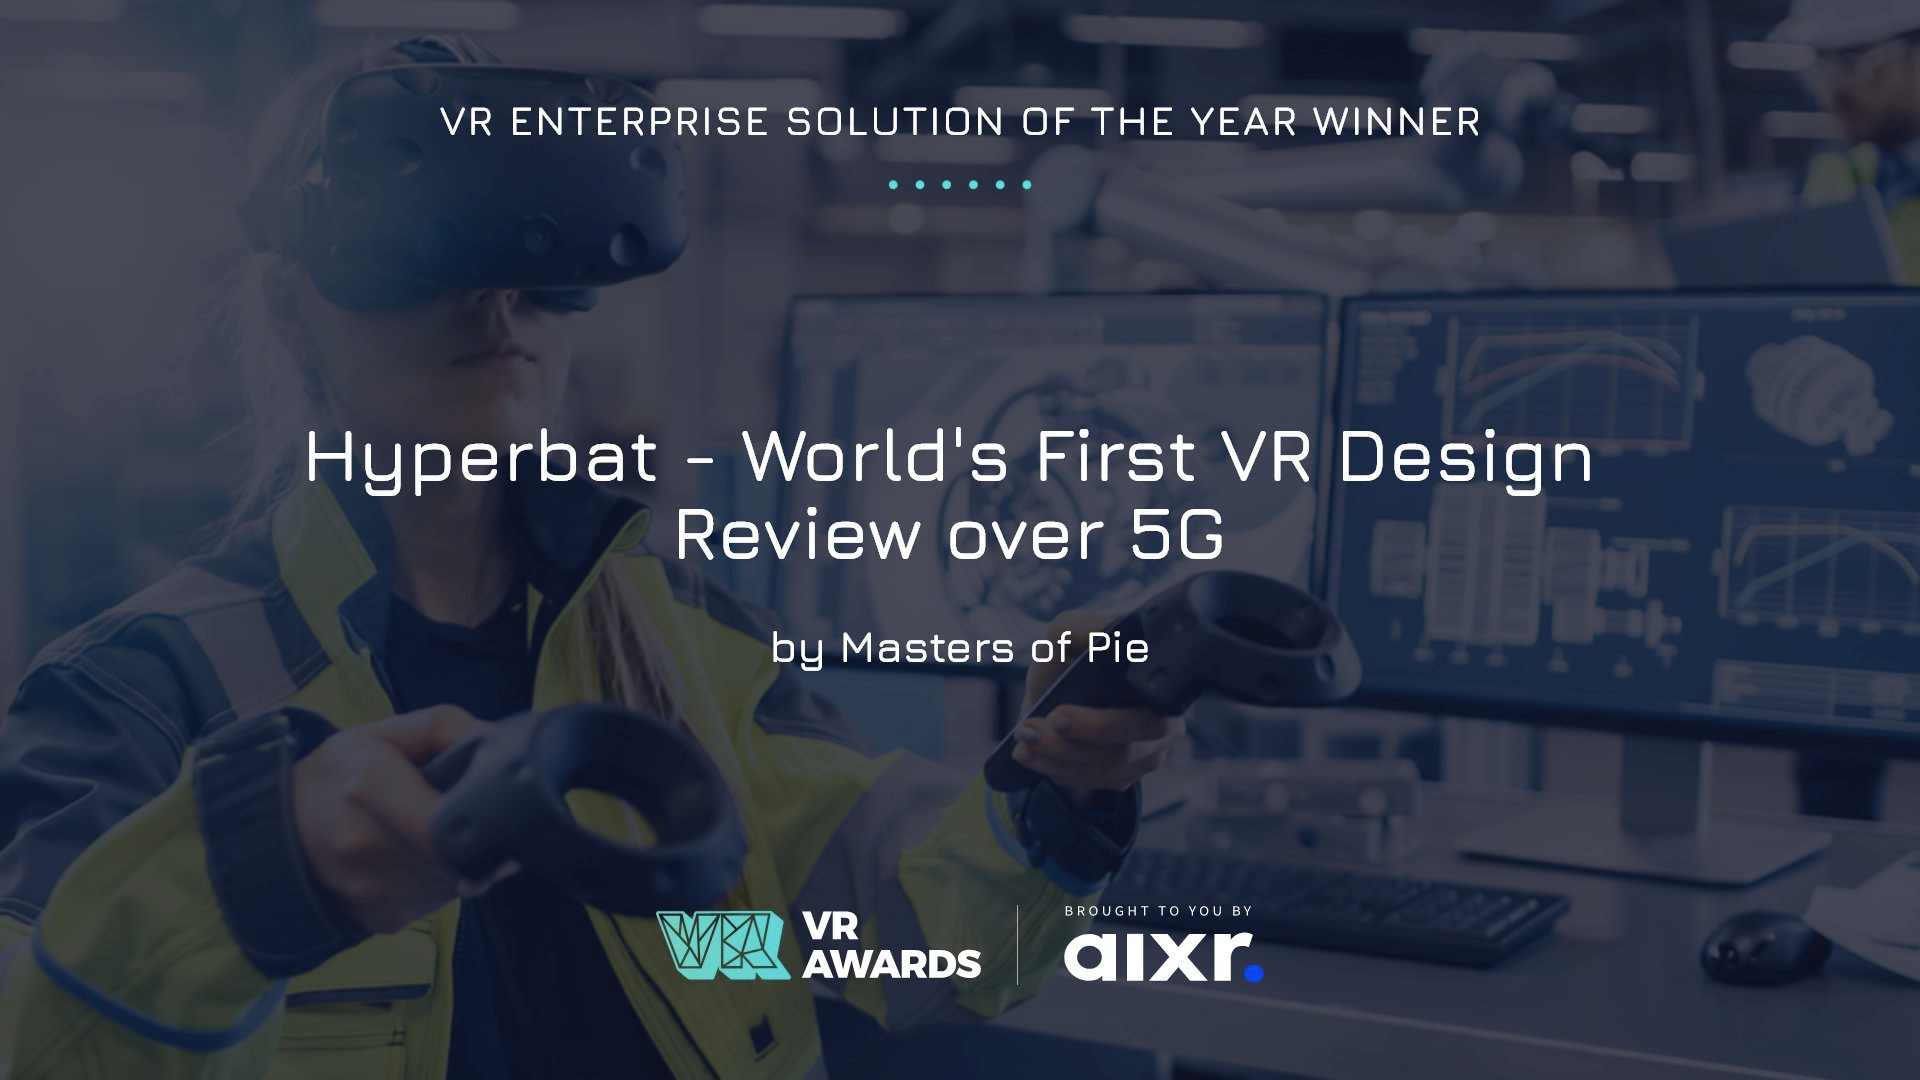 VR Awards 2021 Winner